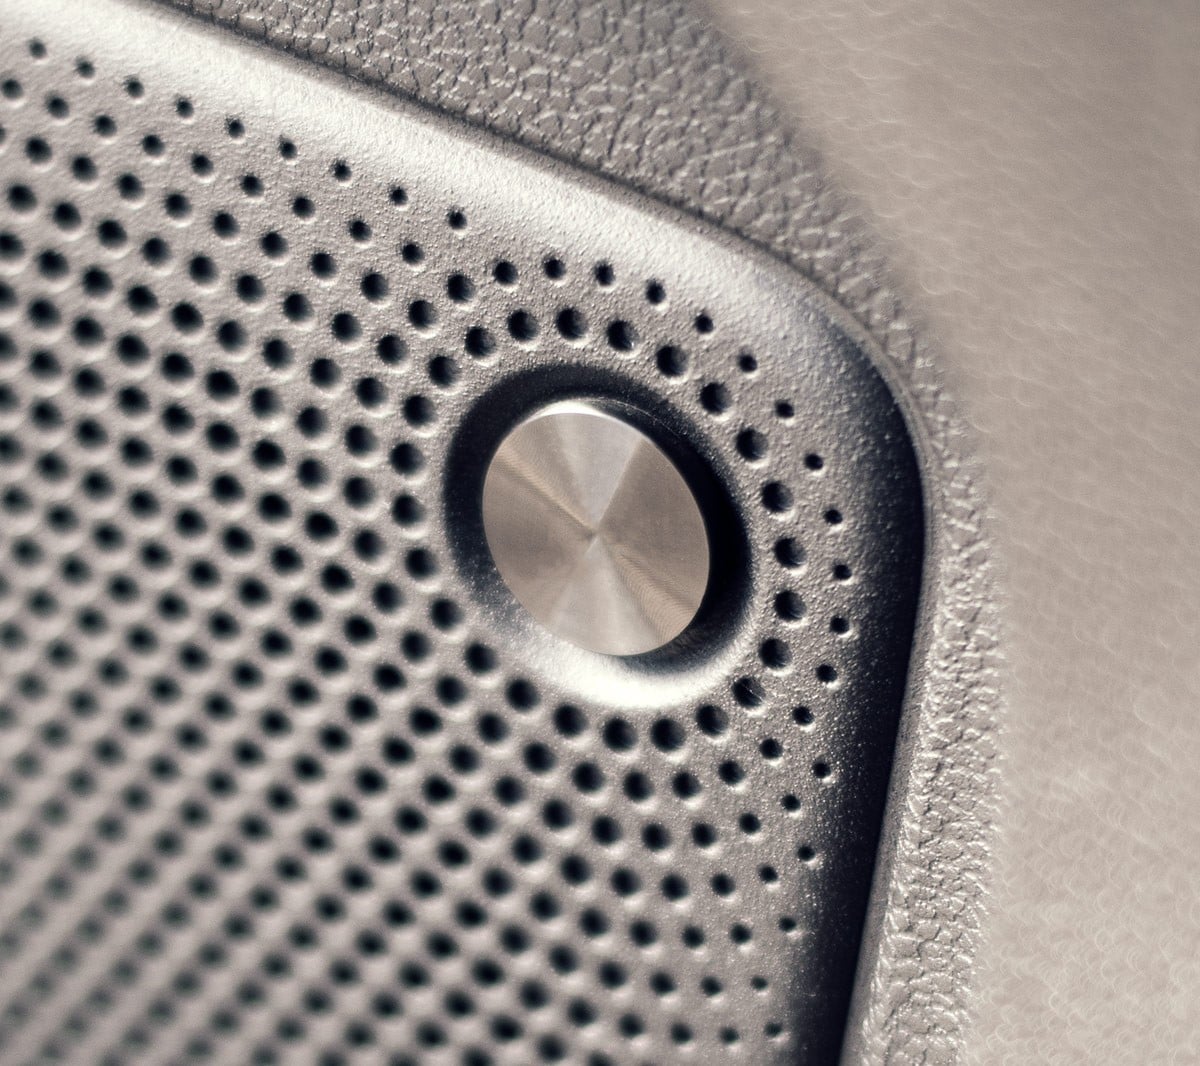 Helt nyt Ford Kuga interiør viser nærbillede af B&O lydsystem